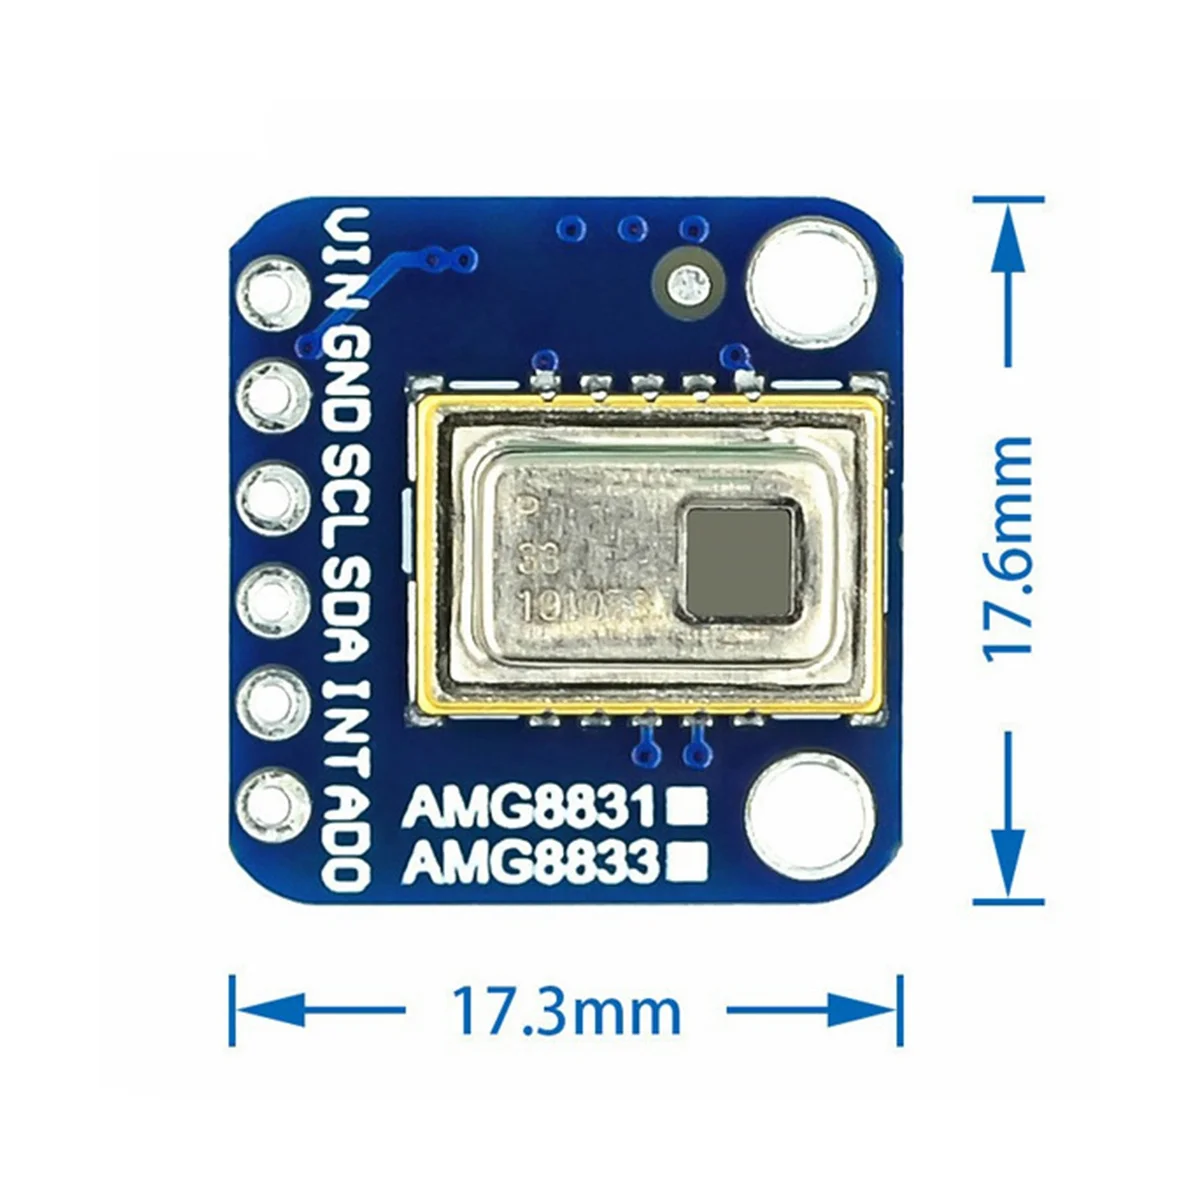 AMG8833 IR 8X8 תרמי Imager חיישן טמפרטורה מודול פטל